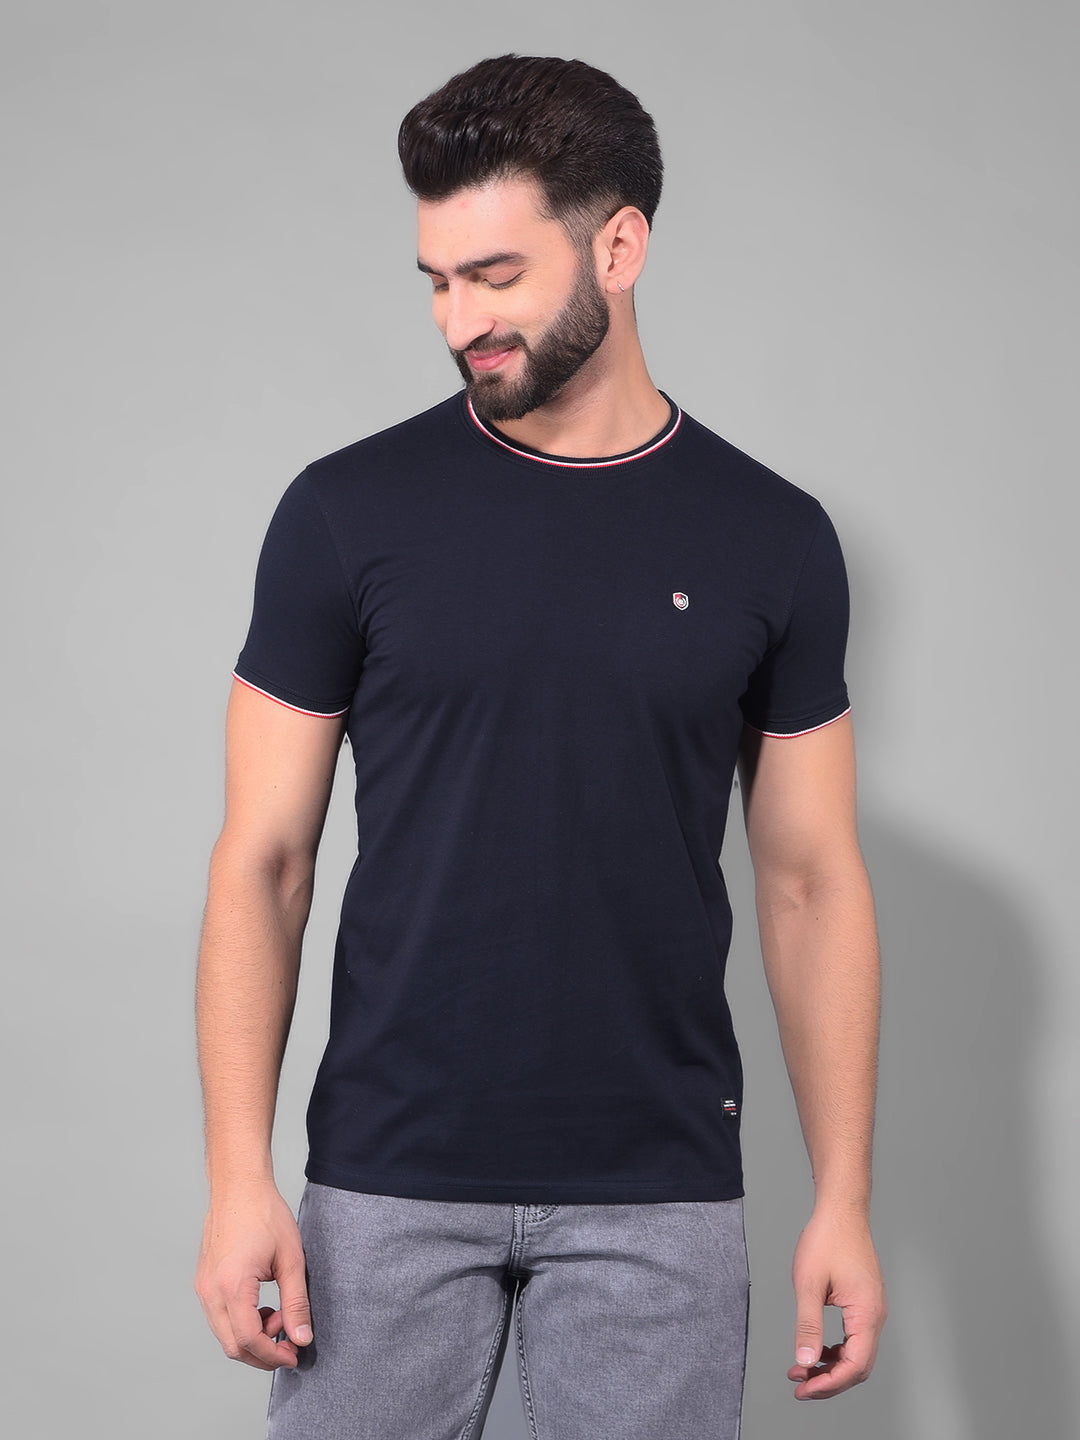 cobb solid navy blue round neck t-shirt